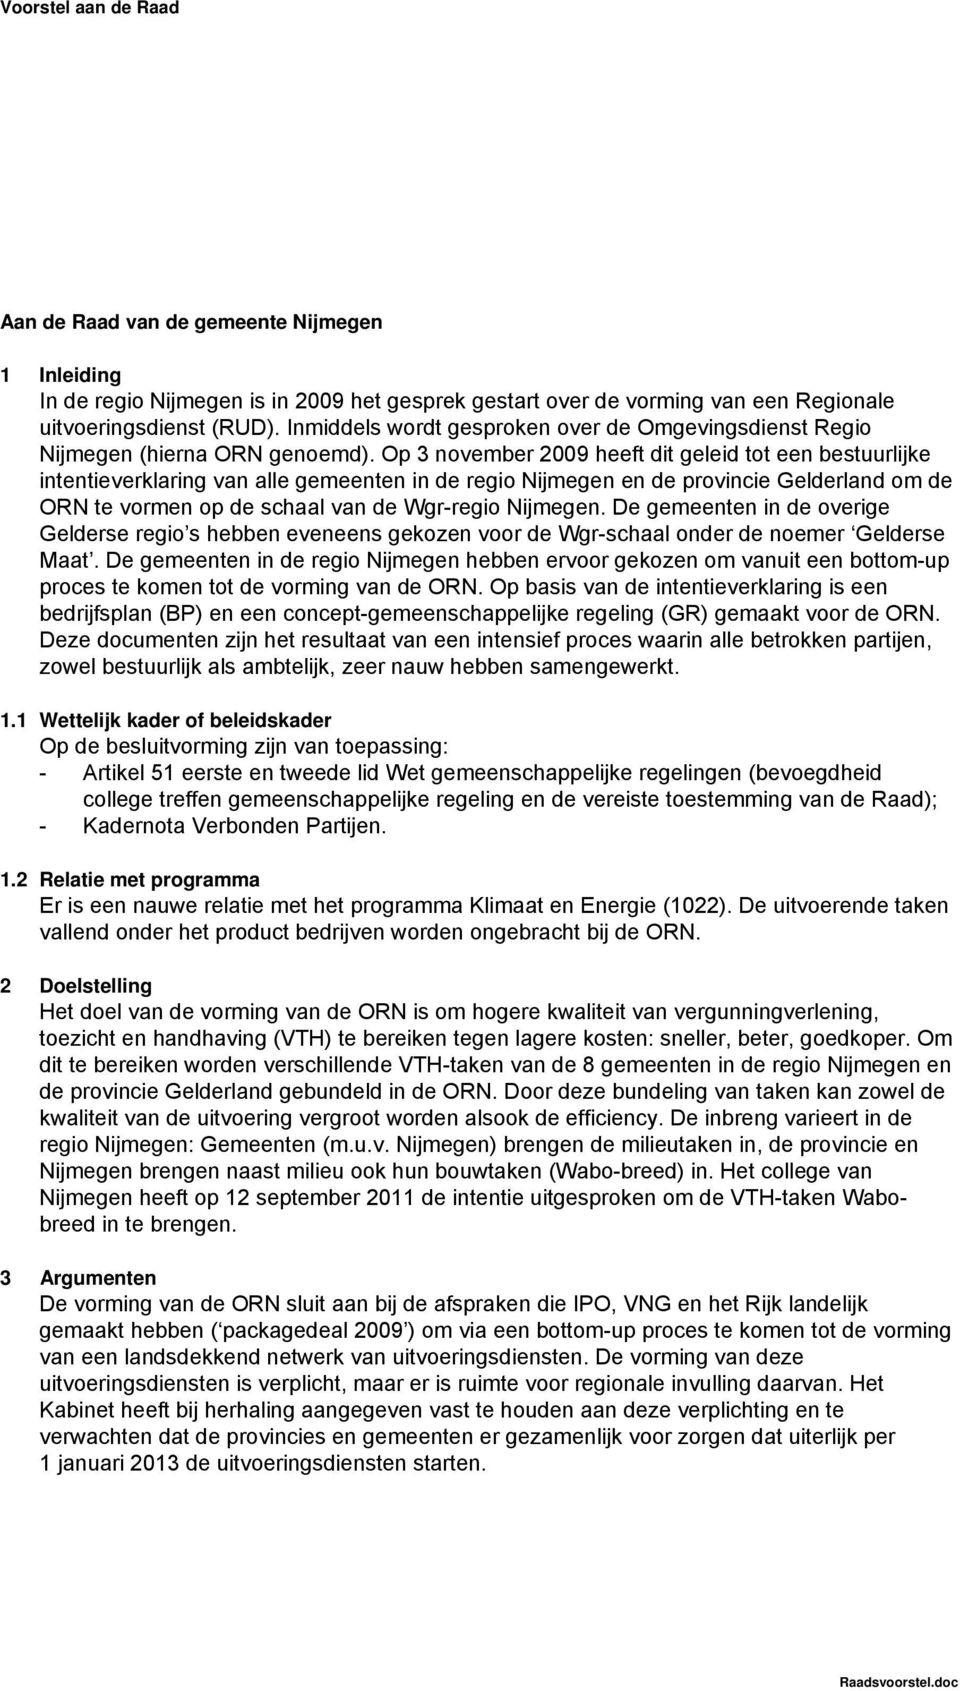 Op 3 november 2009 heeft dit geleid tot een bestuurlijke intentieverklaring van alle gemeenten in de regio Nijmegen en de provincie Gelderland om de ORN te vormen op de schaal van de Wgr-regio